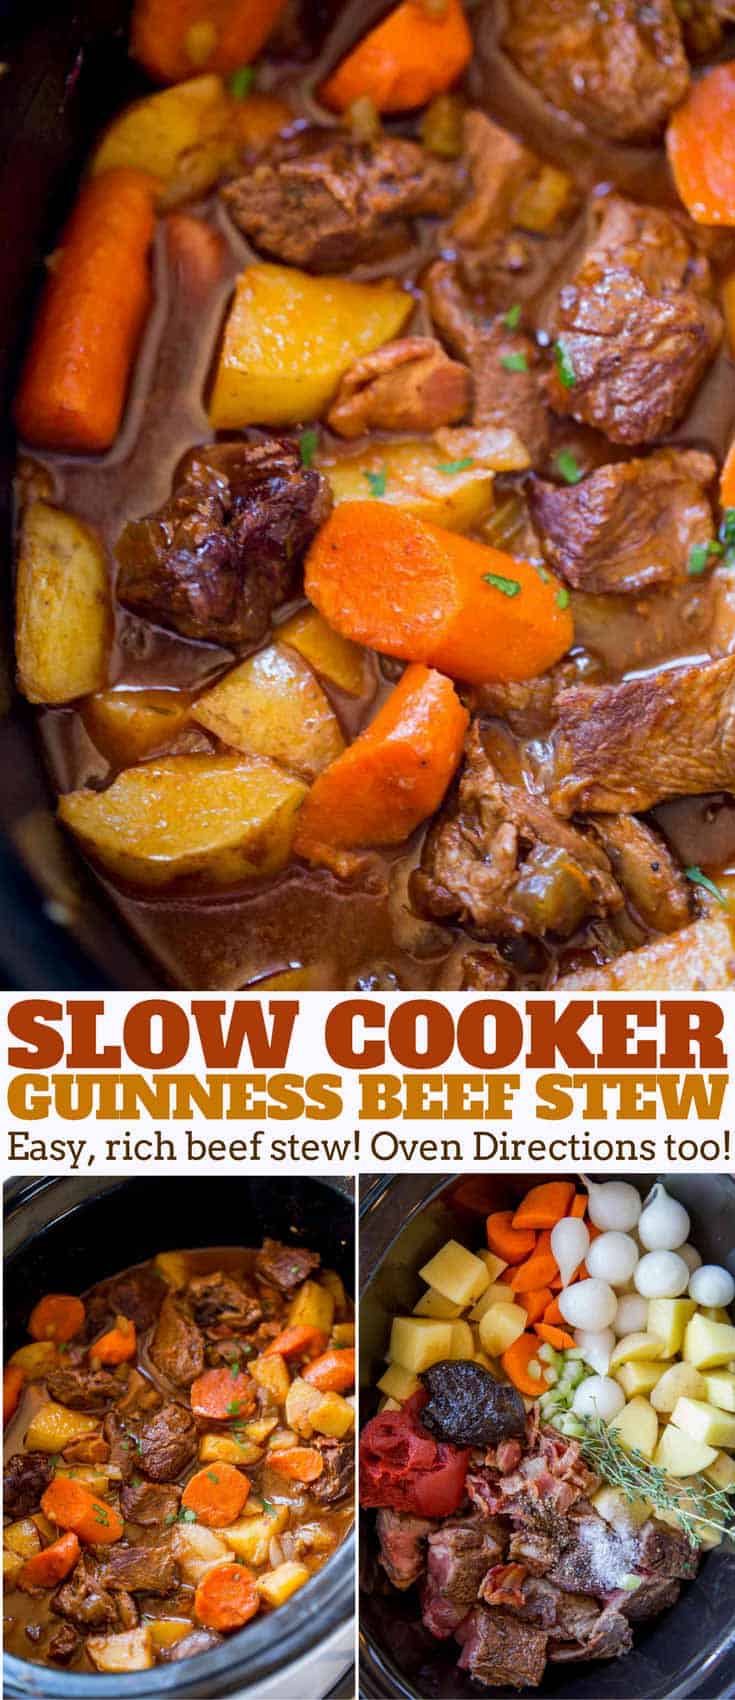 https://dinnerthendessert.com/wp-content/uploads/2017/12/Slow-Cooker-Guinness-Beef-Stew-L.jpg